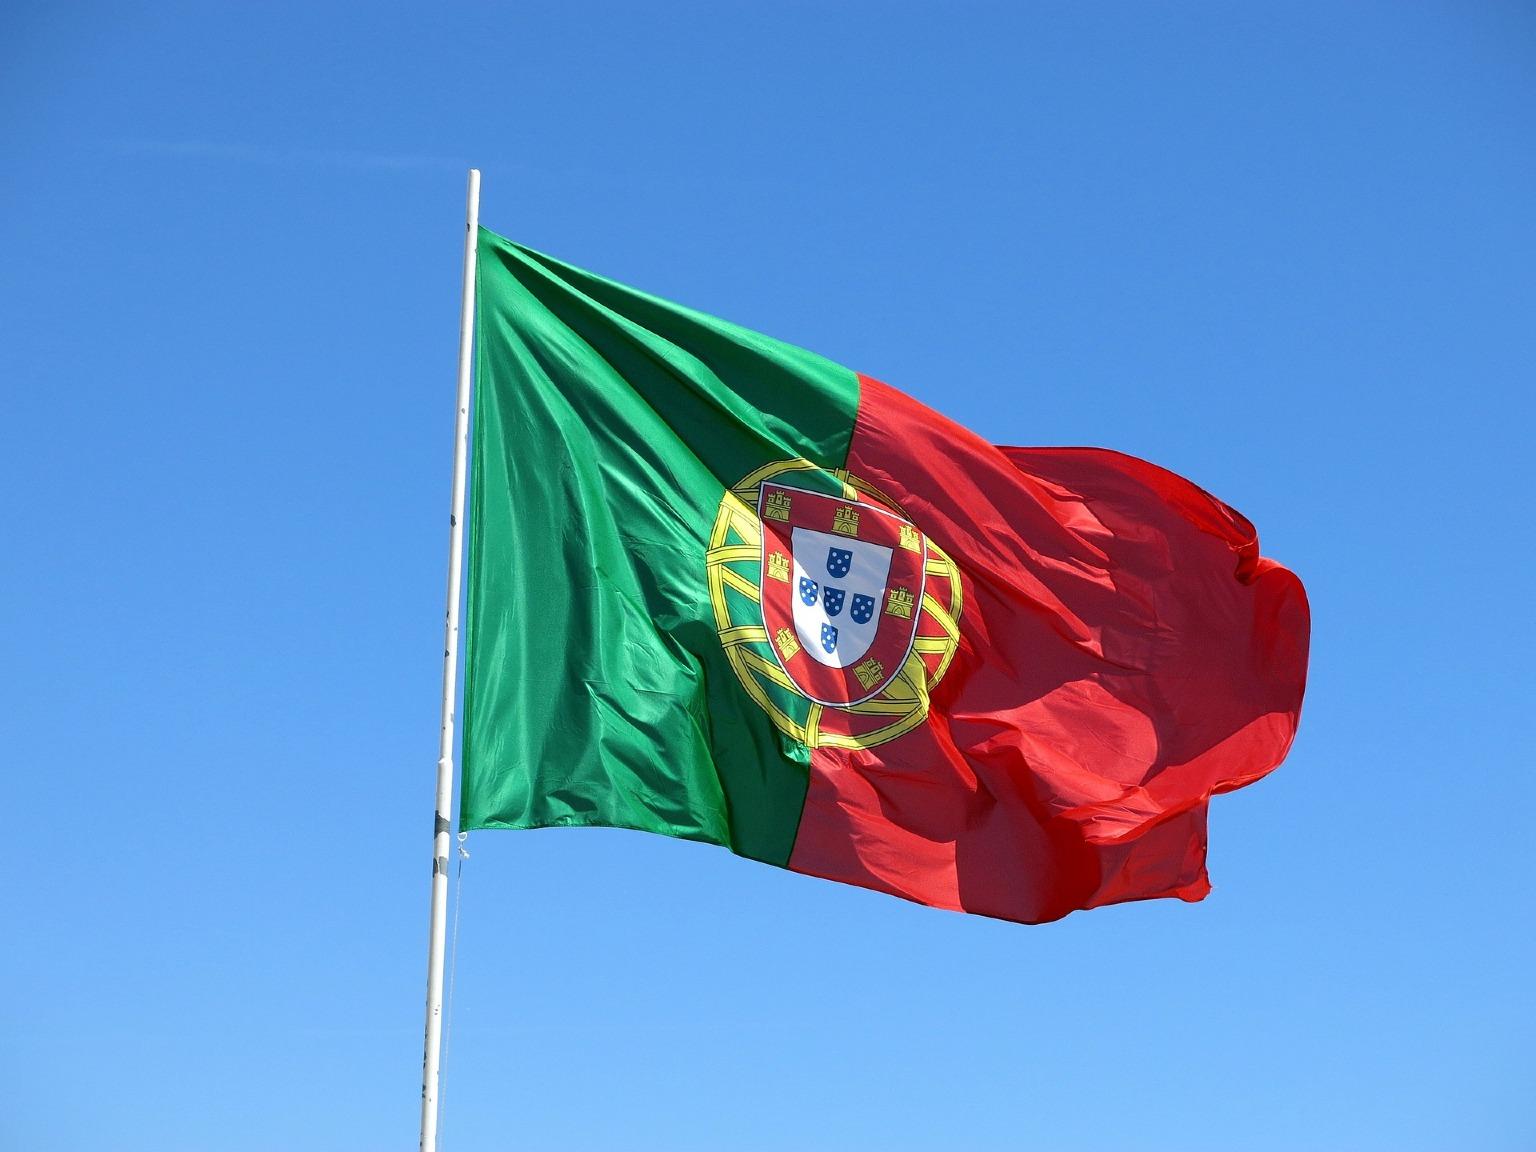 Drapeau du Portugal flottant sur fond de ciel bleu. Célébration de la Journée du Portugal et de l'unité du peuple portugais.